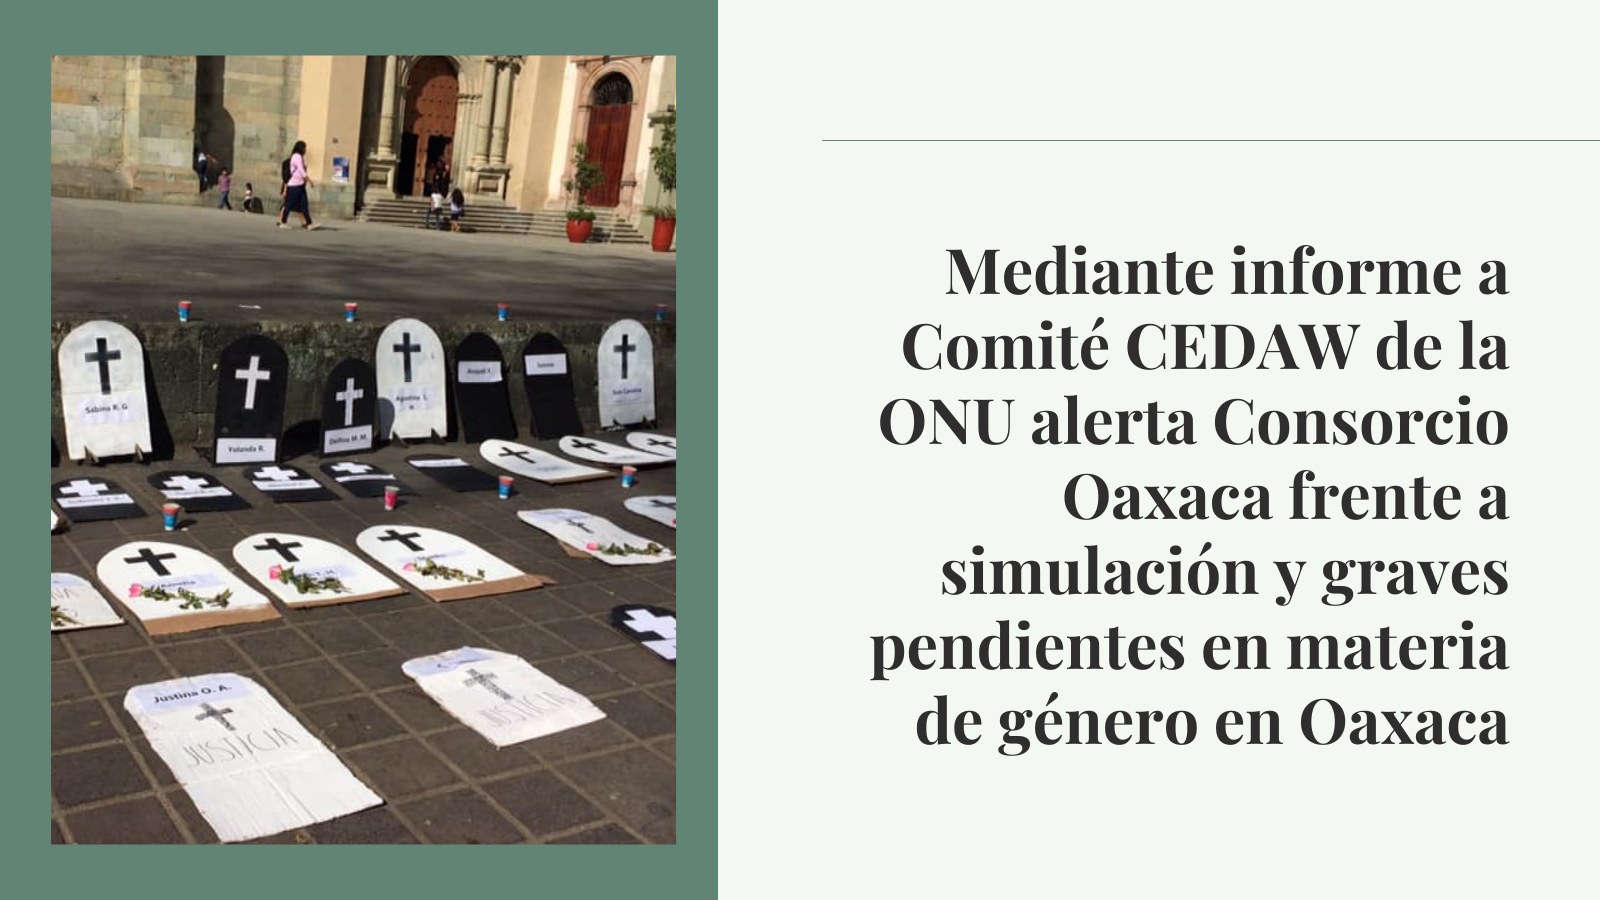 Mediante informe a Comité CEDAW de la ONU alerta Consorcio Oaxaca frente a simulación y graves pendientes en materia de género en Oaxaca